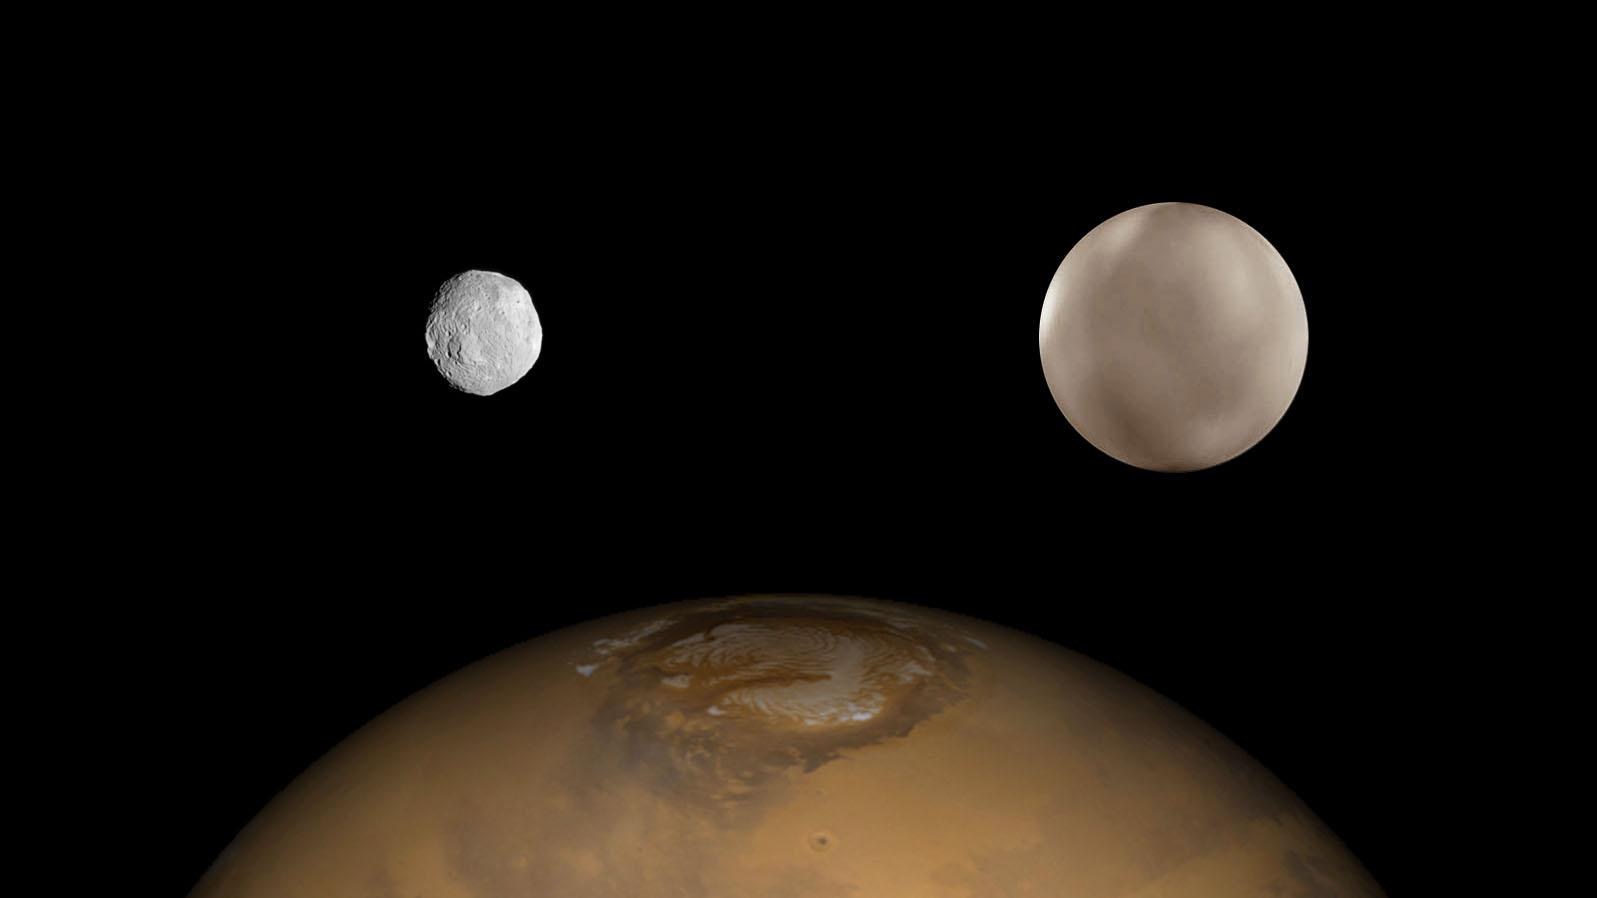 Vesta und Ceres im Größenvergleich zum Mars